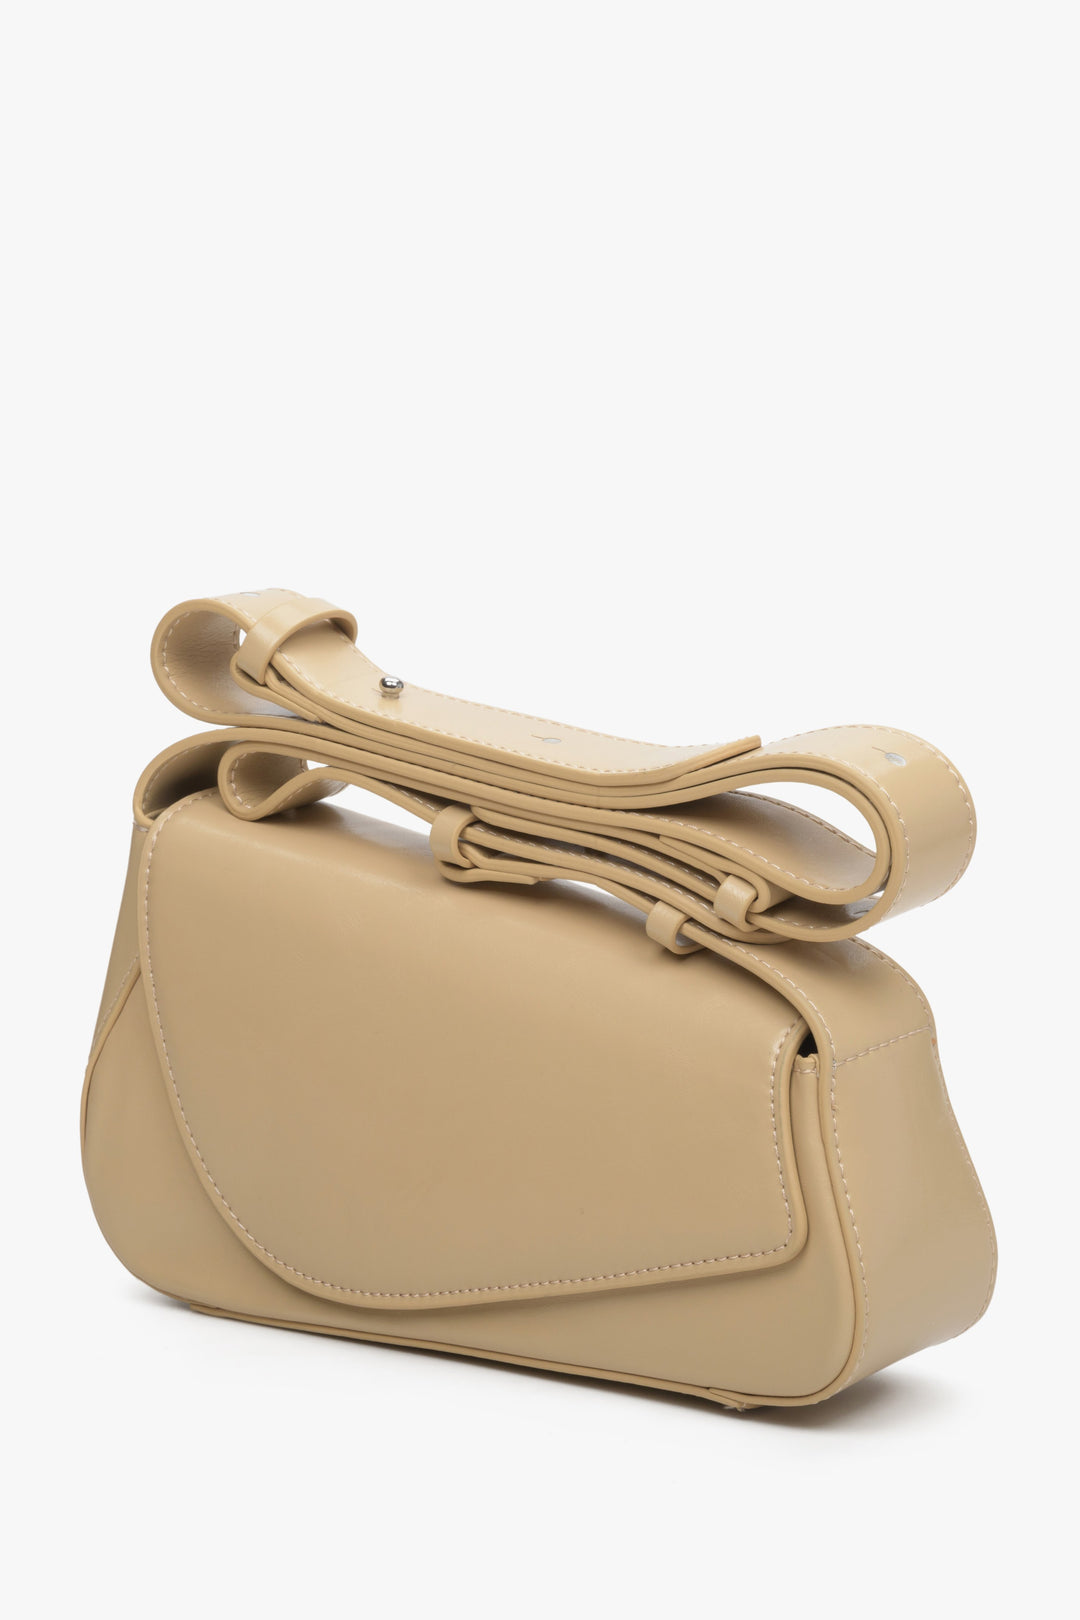 Estro's beige leather women's baguette bag.